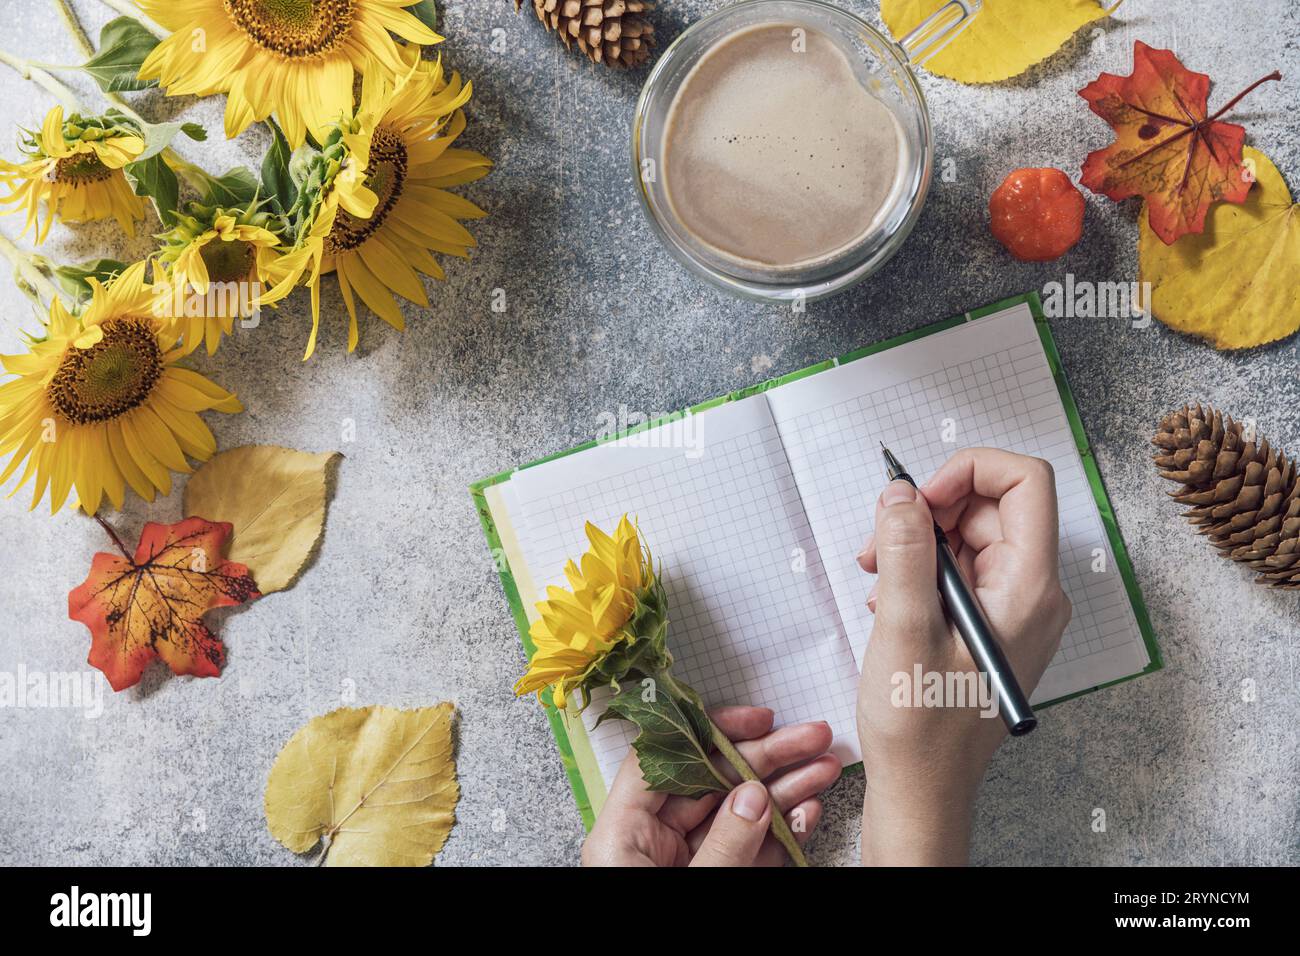 Bonjour. Concept de liste des tâches. Un bouquet de grands tournesols, une tasse à café et un carnet vide sur une table en pierre. Vue de dessus plat l Banque D'Images